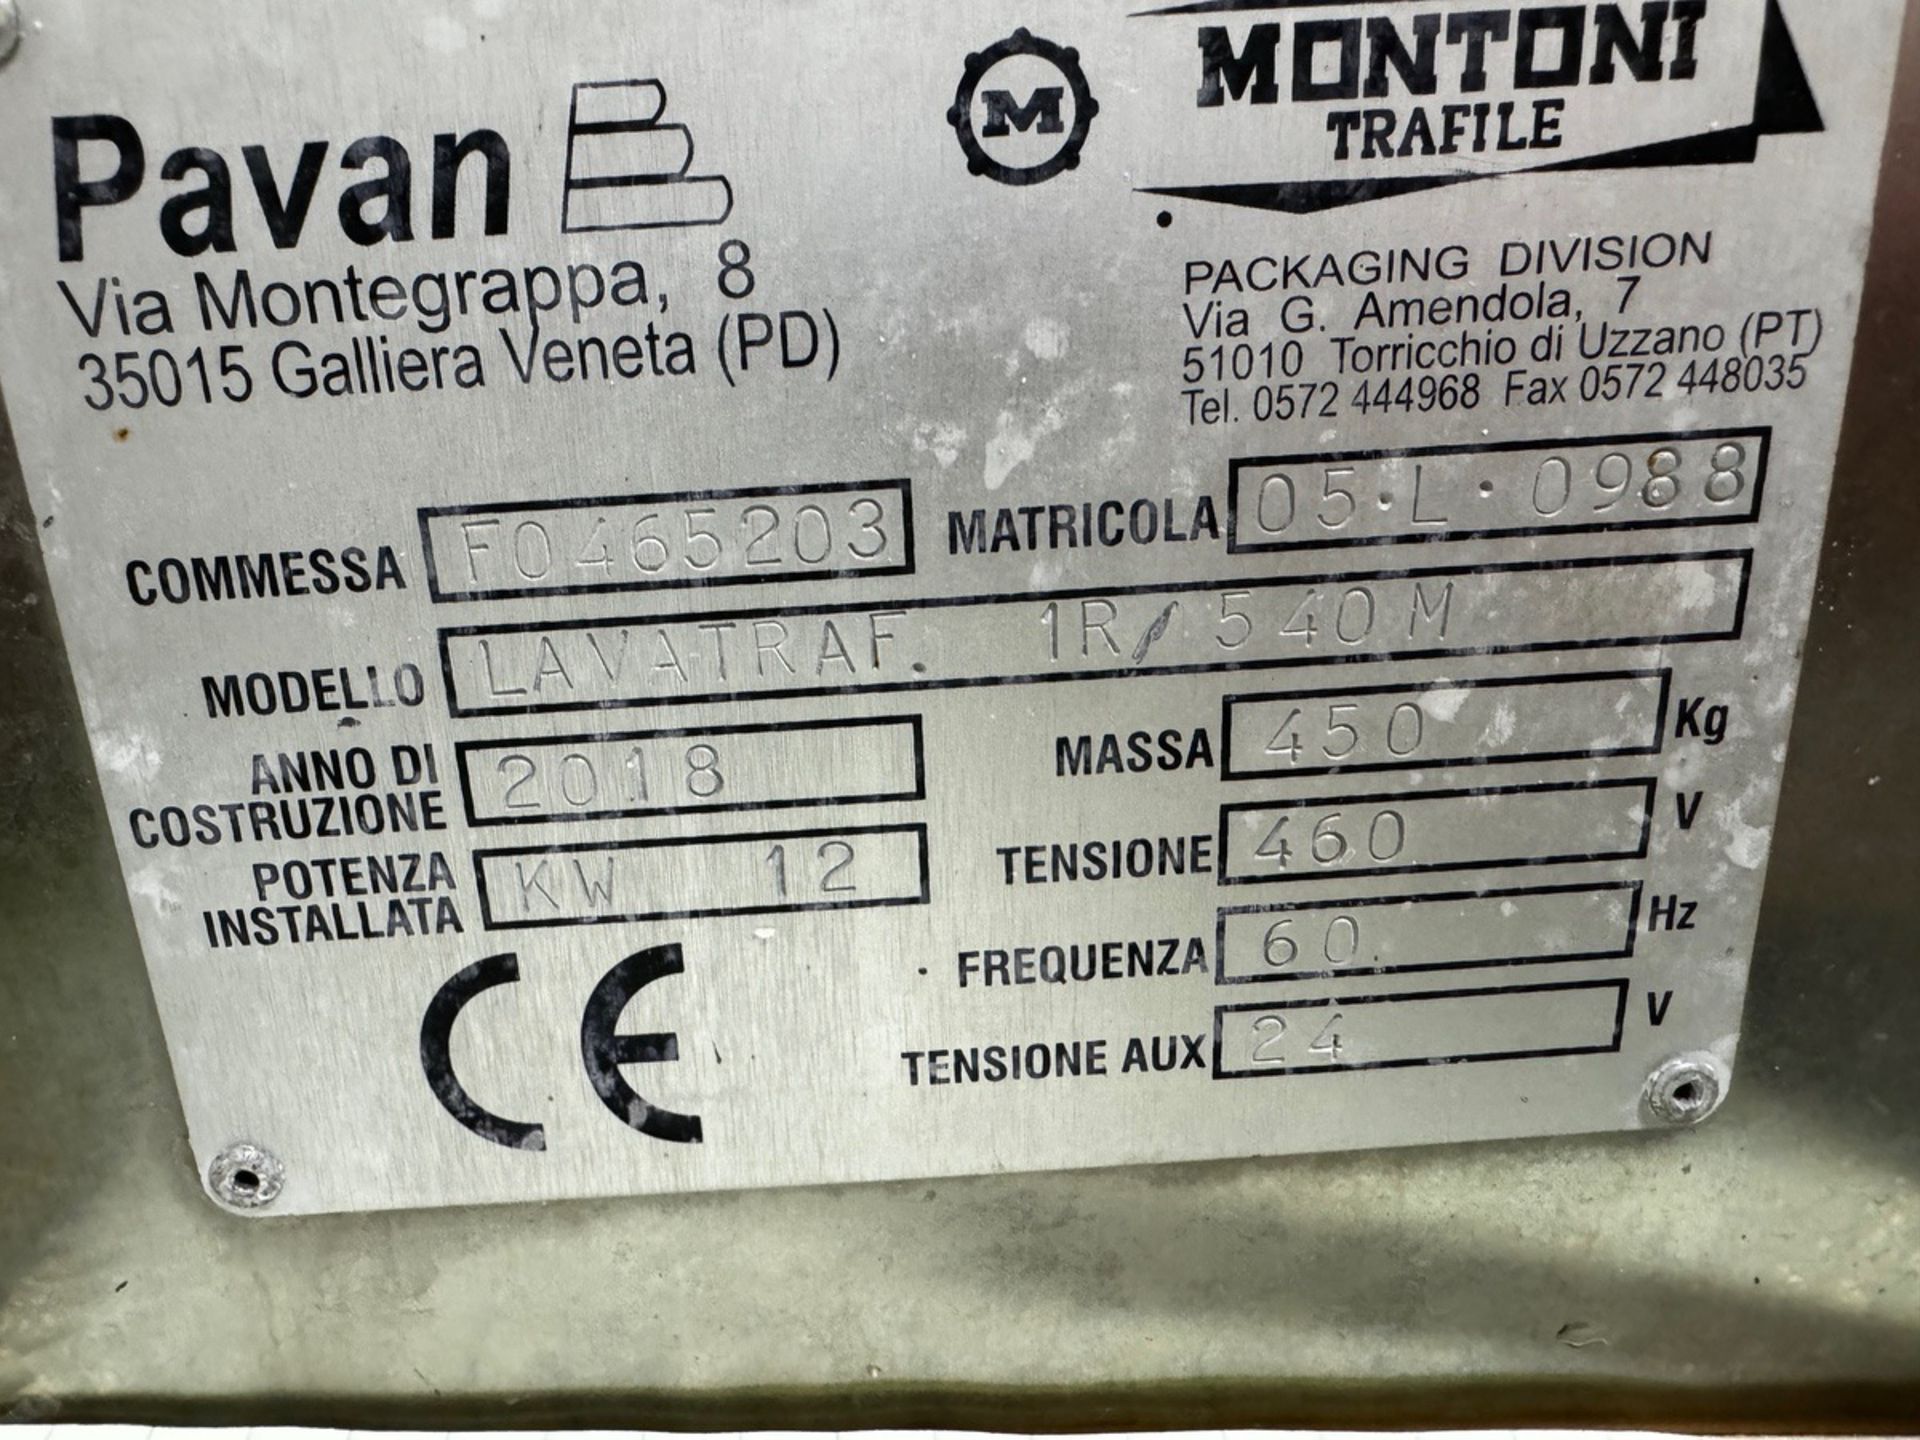 2018 Pavan Pasta Press Die Washer Model LAVA-TRAF 1R/540M, S/N F0465203 - Image 5 of 6